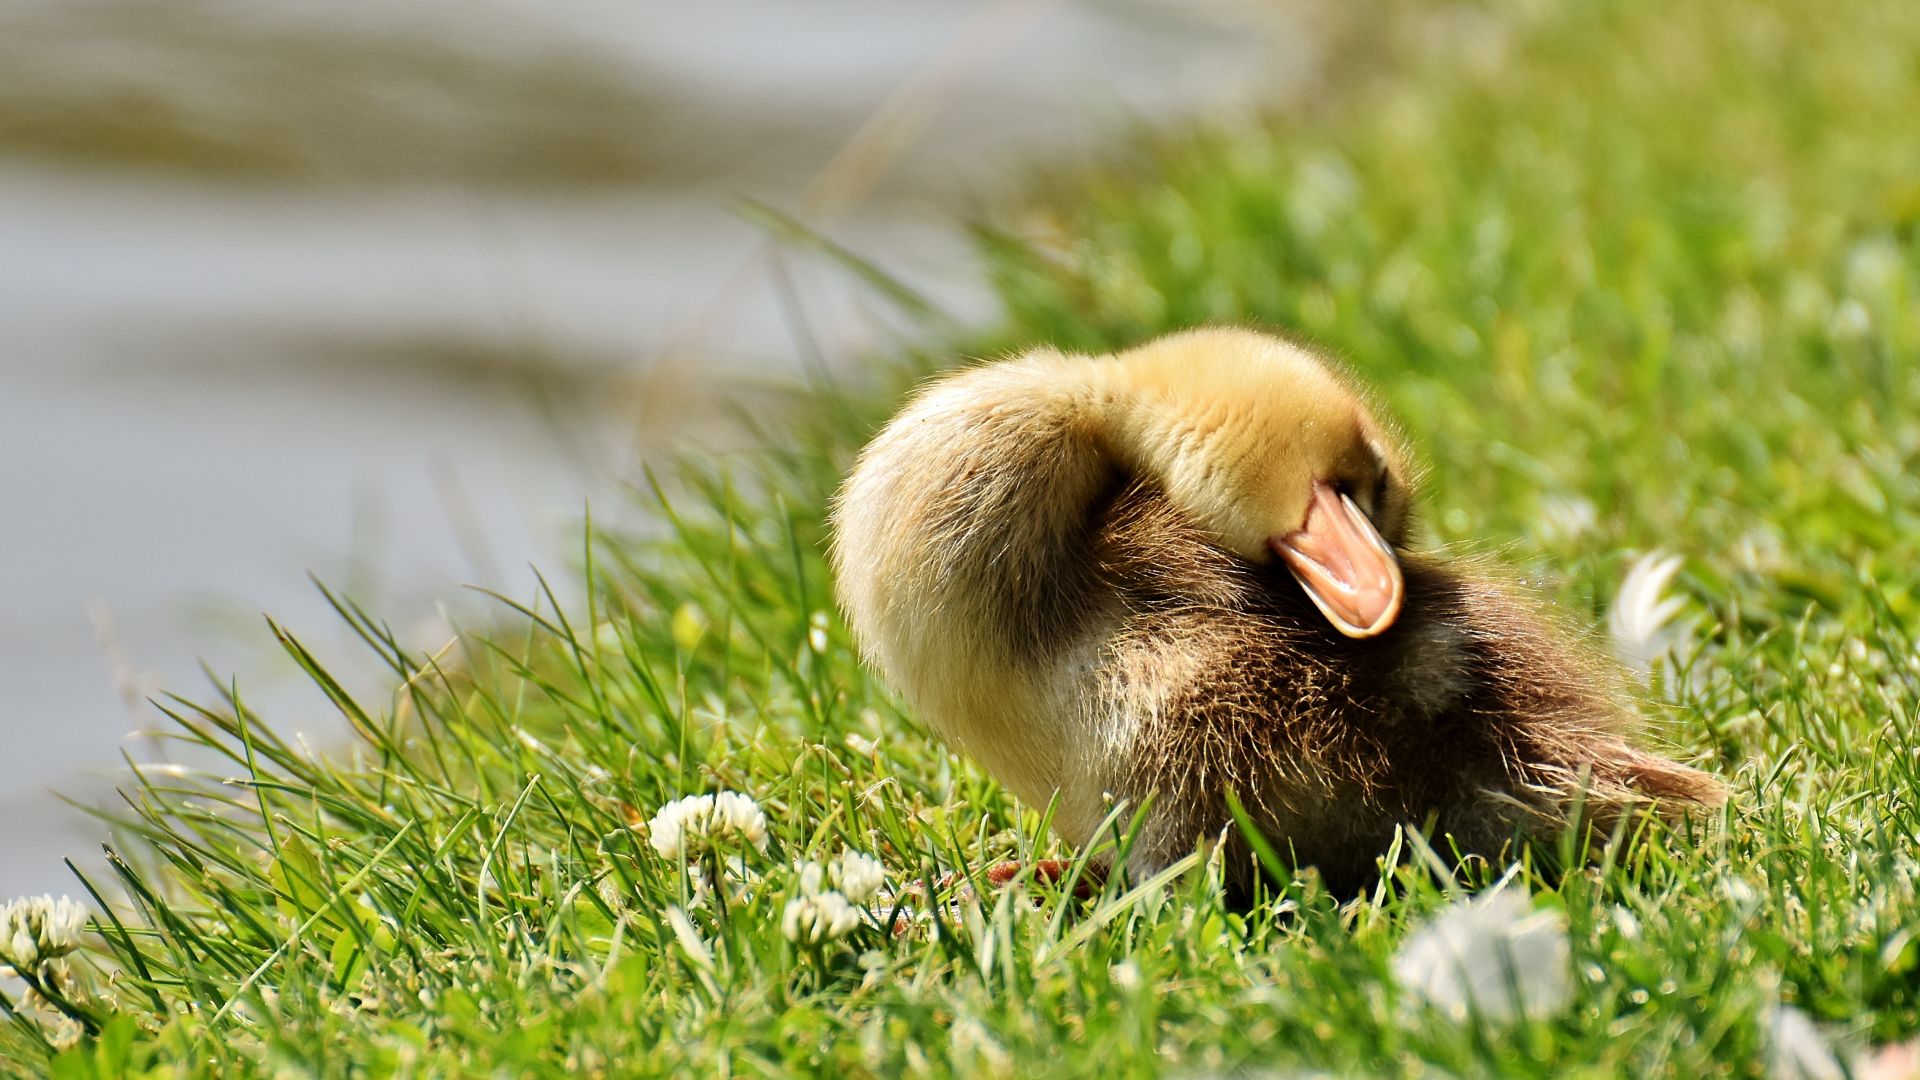 Wallpaper Duckling, sleep, baby duck, grass